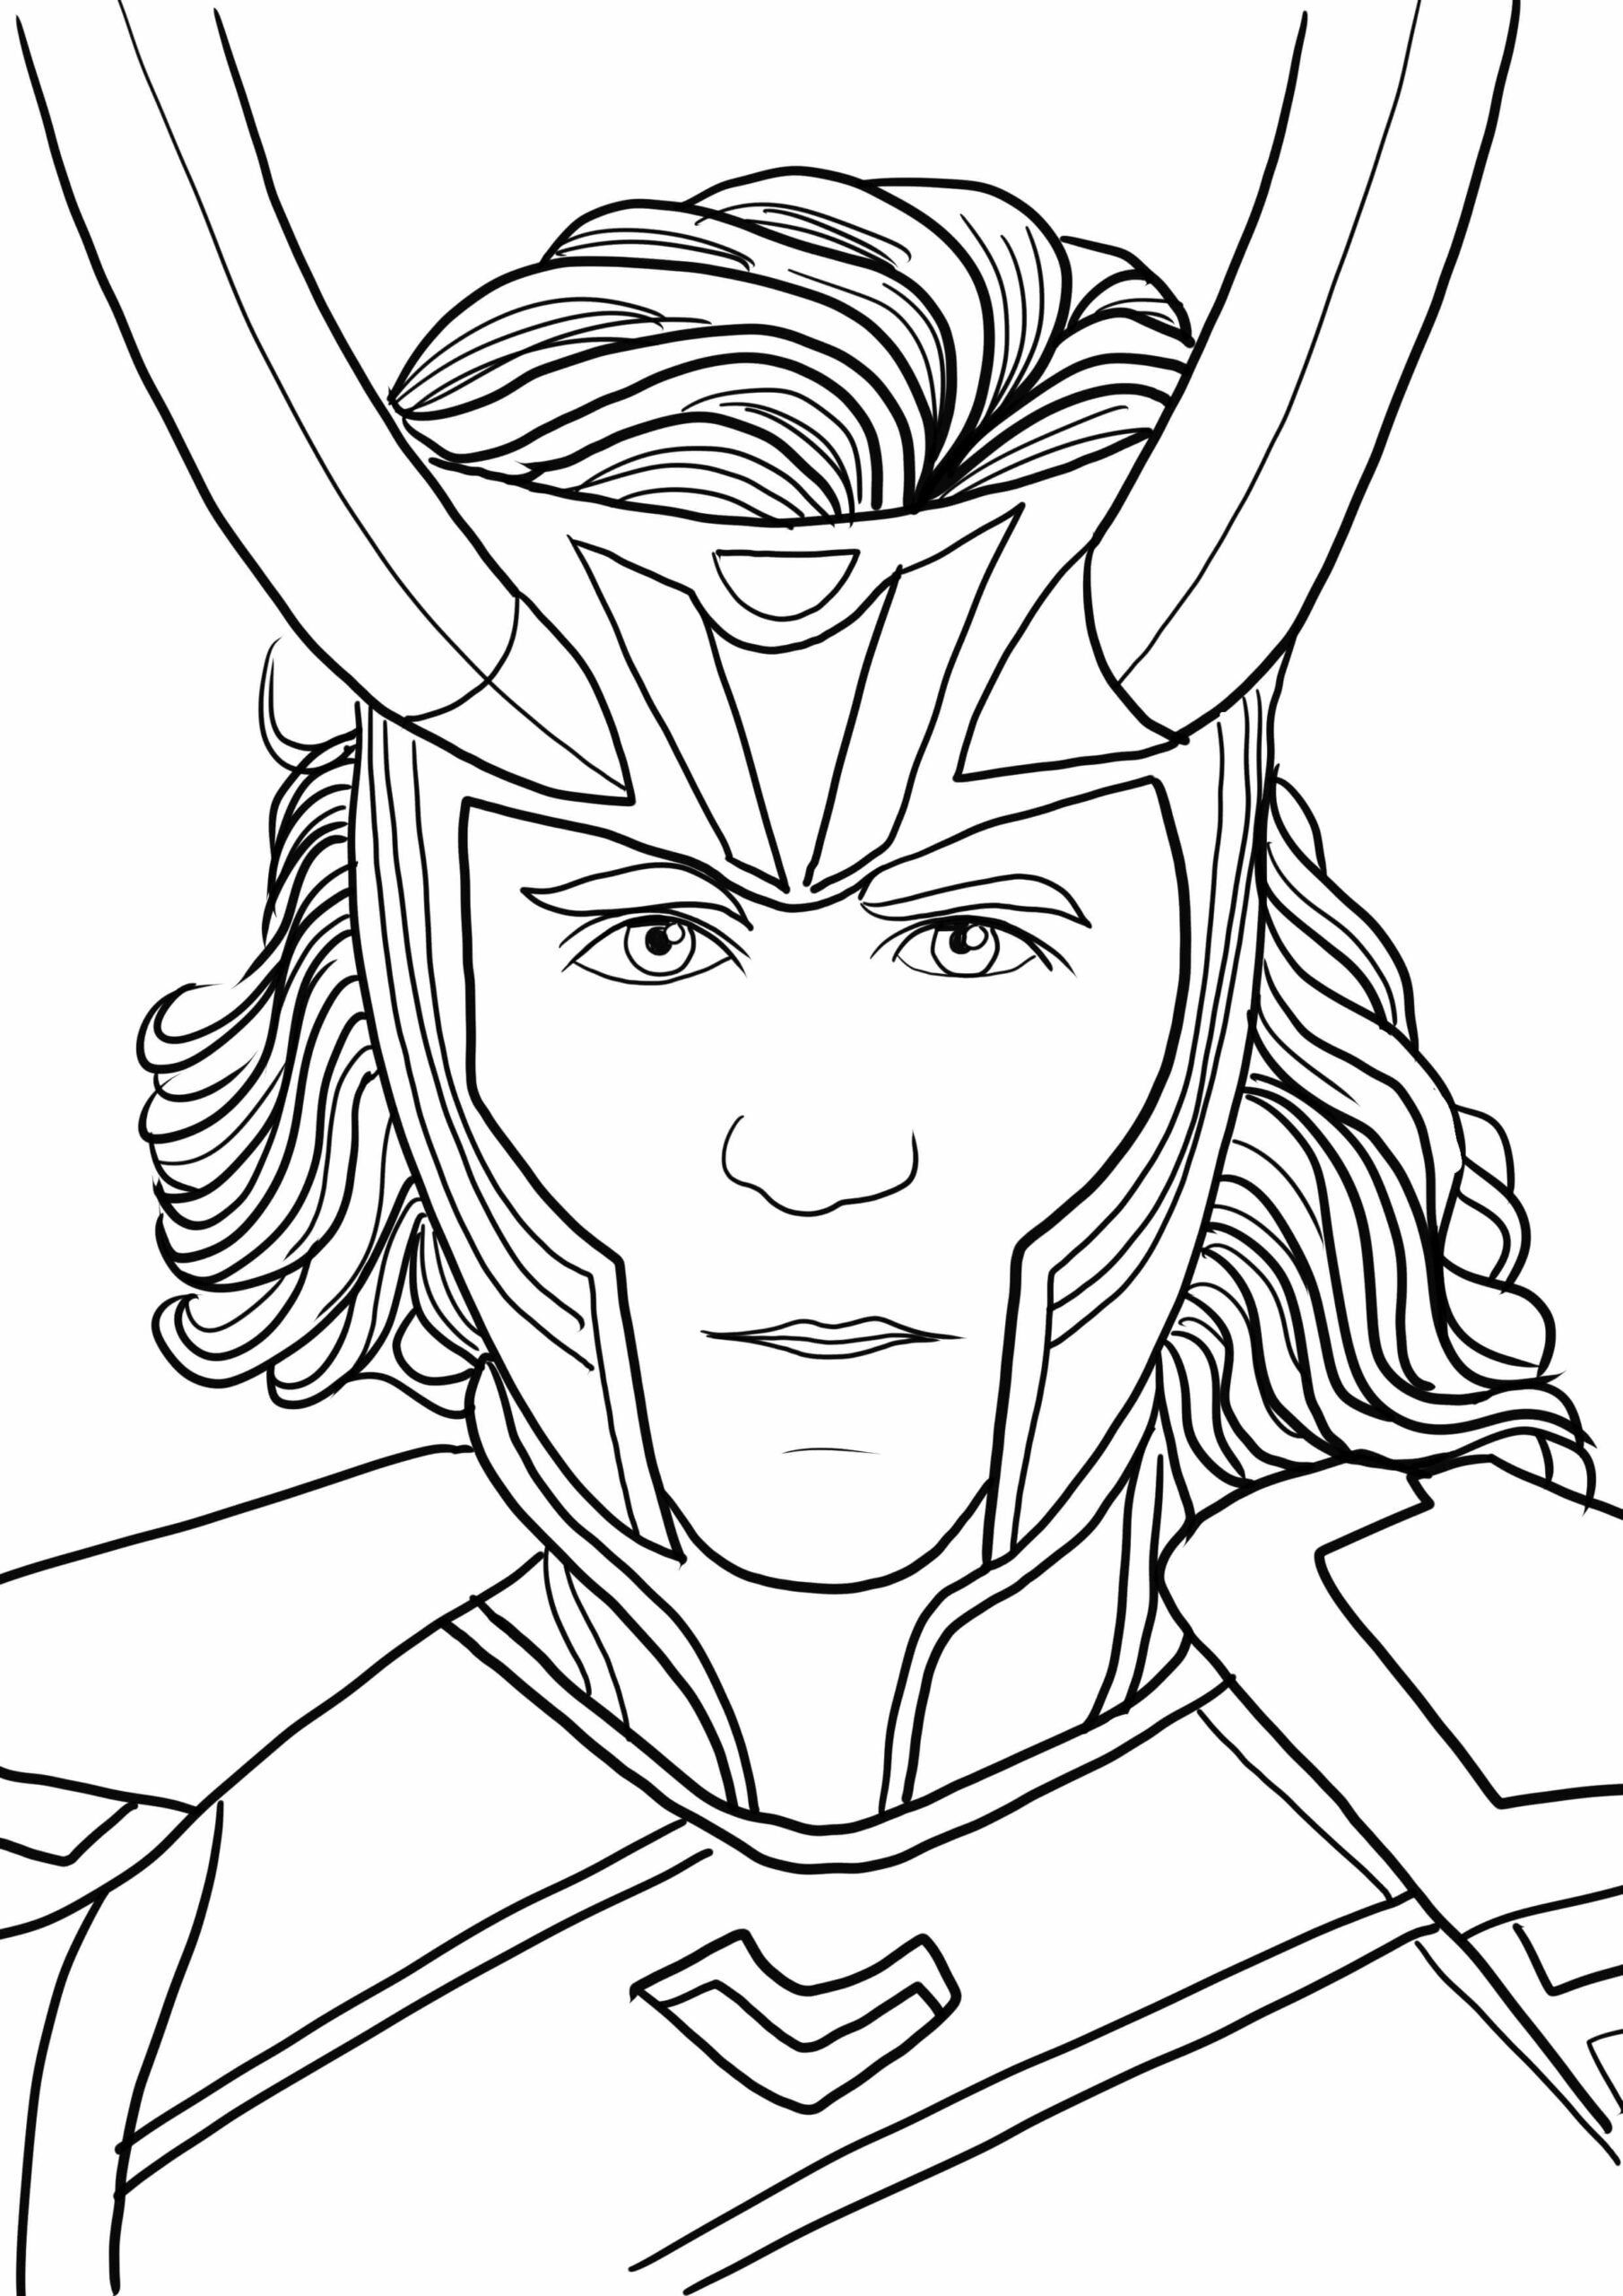 Le Visage de Loki coloring page